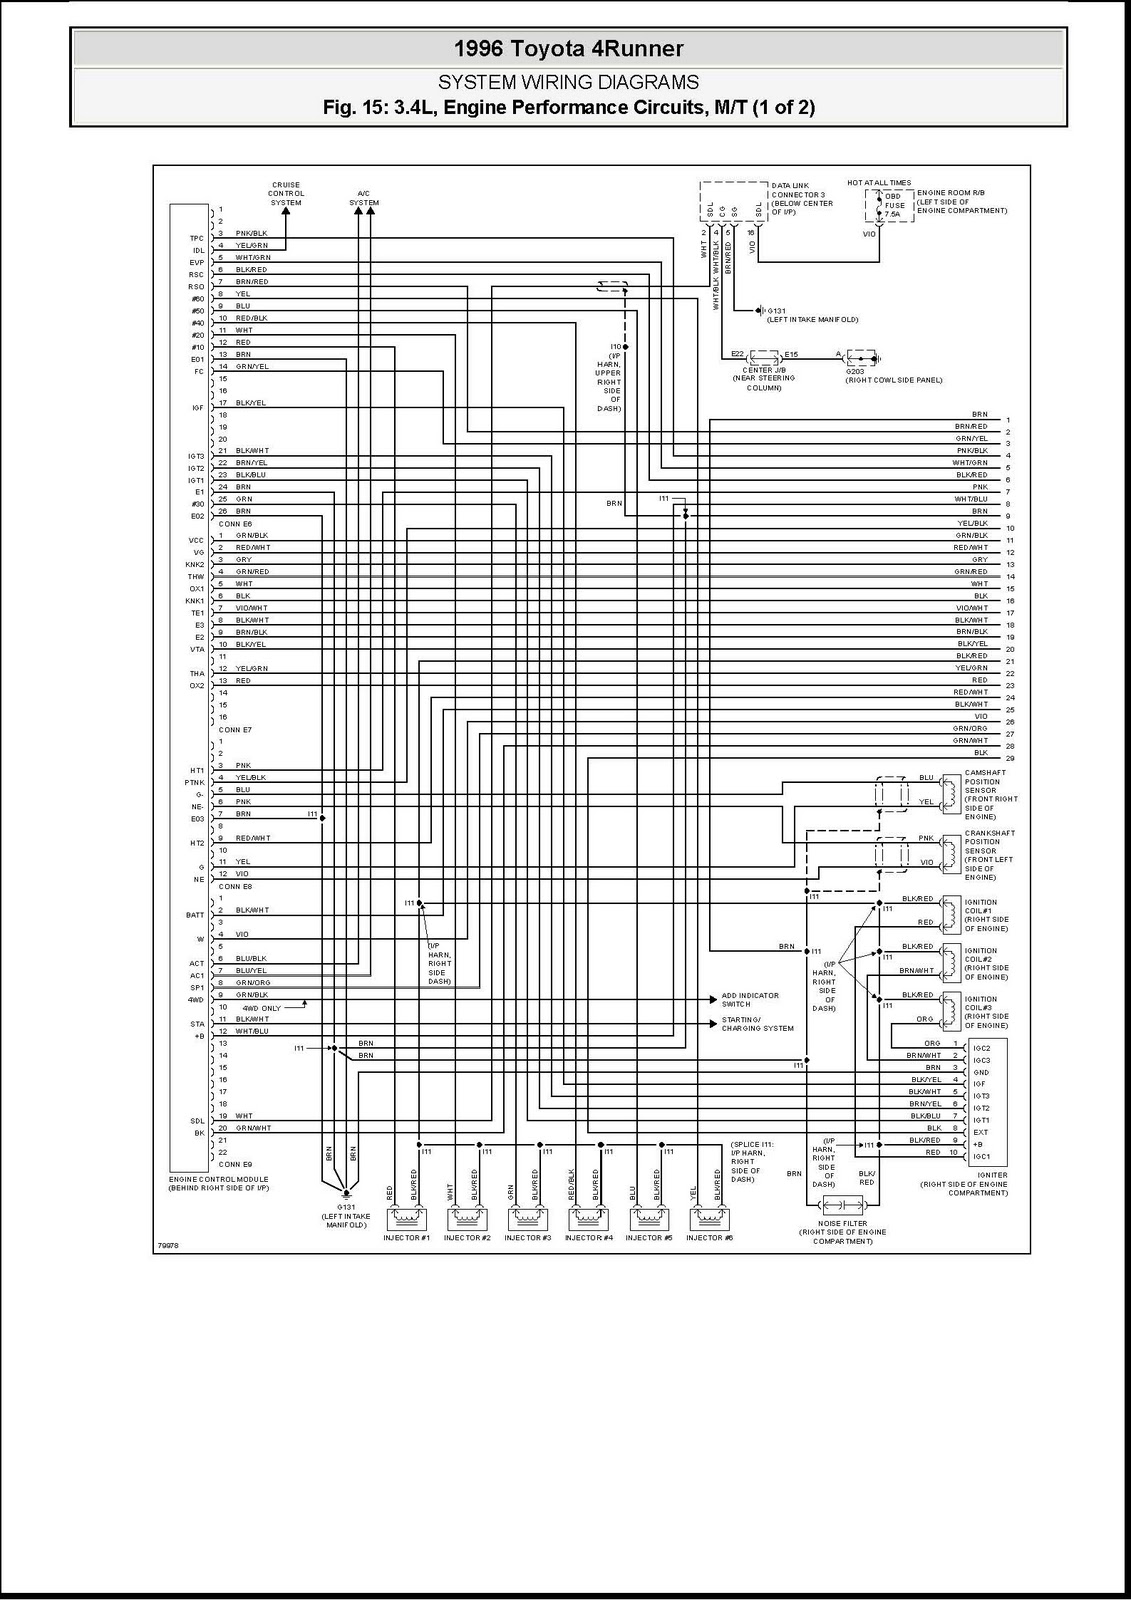 DDMP Automotriz: Diagrama Electrico Motor Toyota 5VZ-FE 1996 1994 ford f 150 wiring diagram 